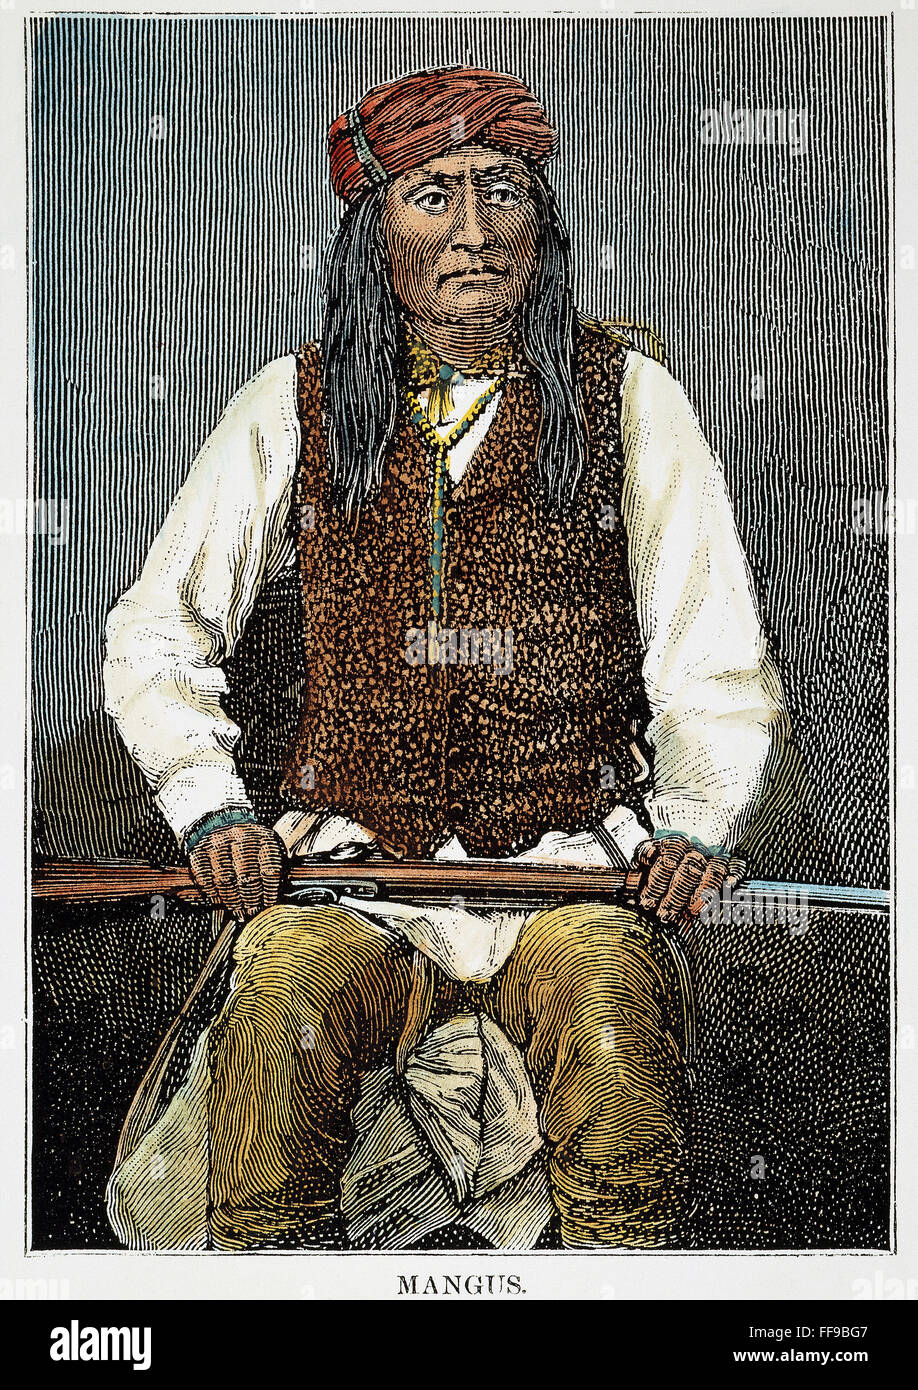 MANGAS COLORADAS /n(c1797-1863). Apachen-Häuptling. Holzstich, 1886. Stockfoto